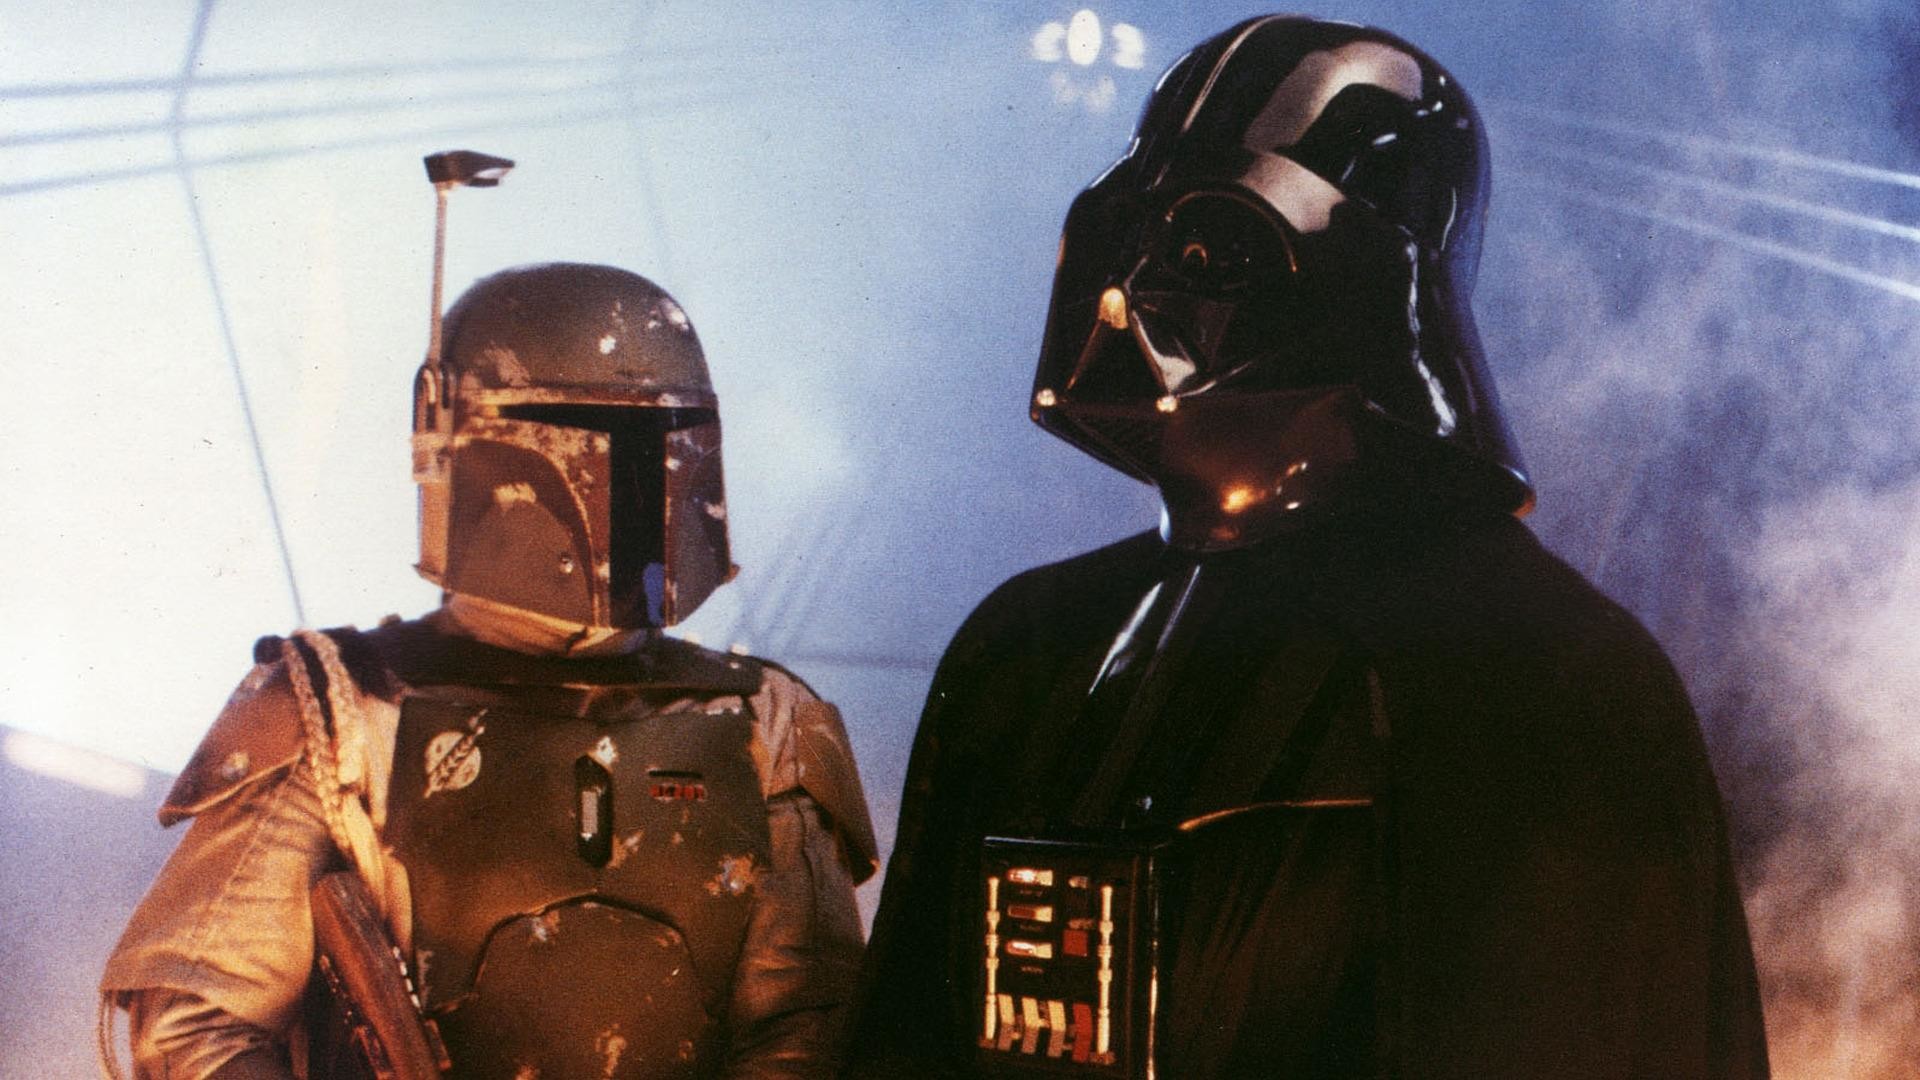 Boba Fett and Darth Vader